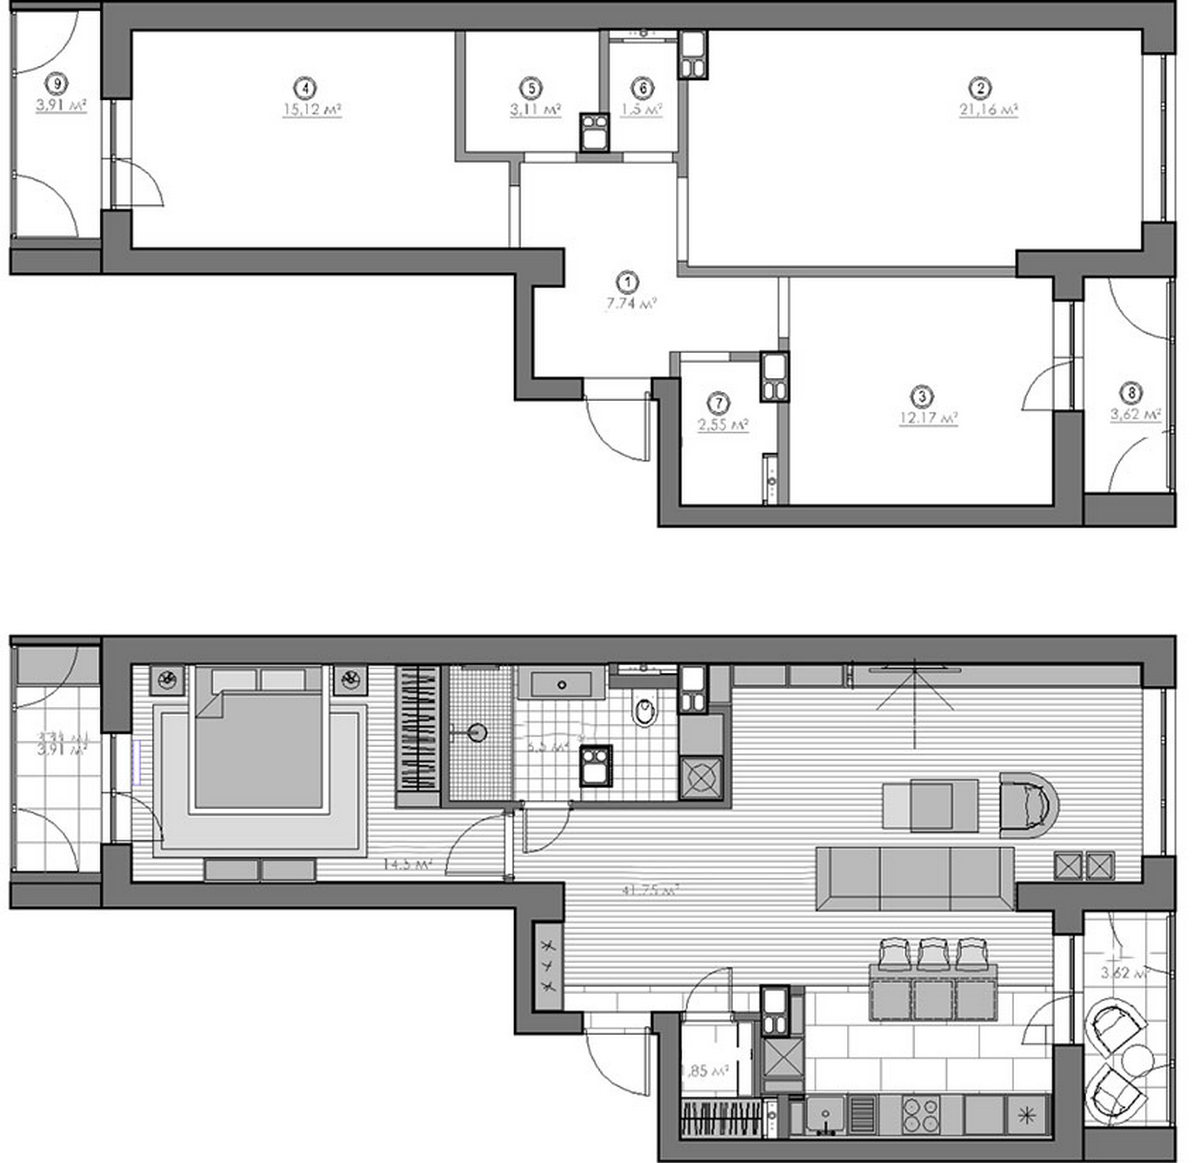 Letisztult, modern, elegáns lakberendezés - hölgy 63m2-es lakása, a tér átszervezésével személyre szabott enteriőr